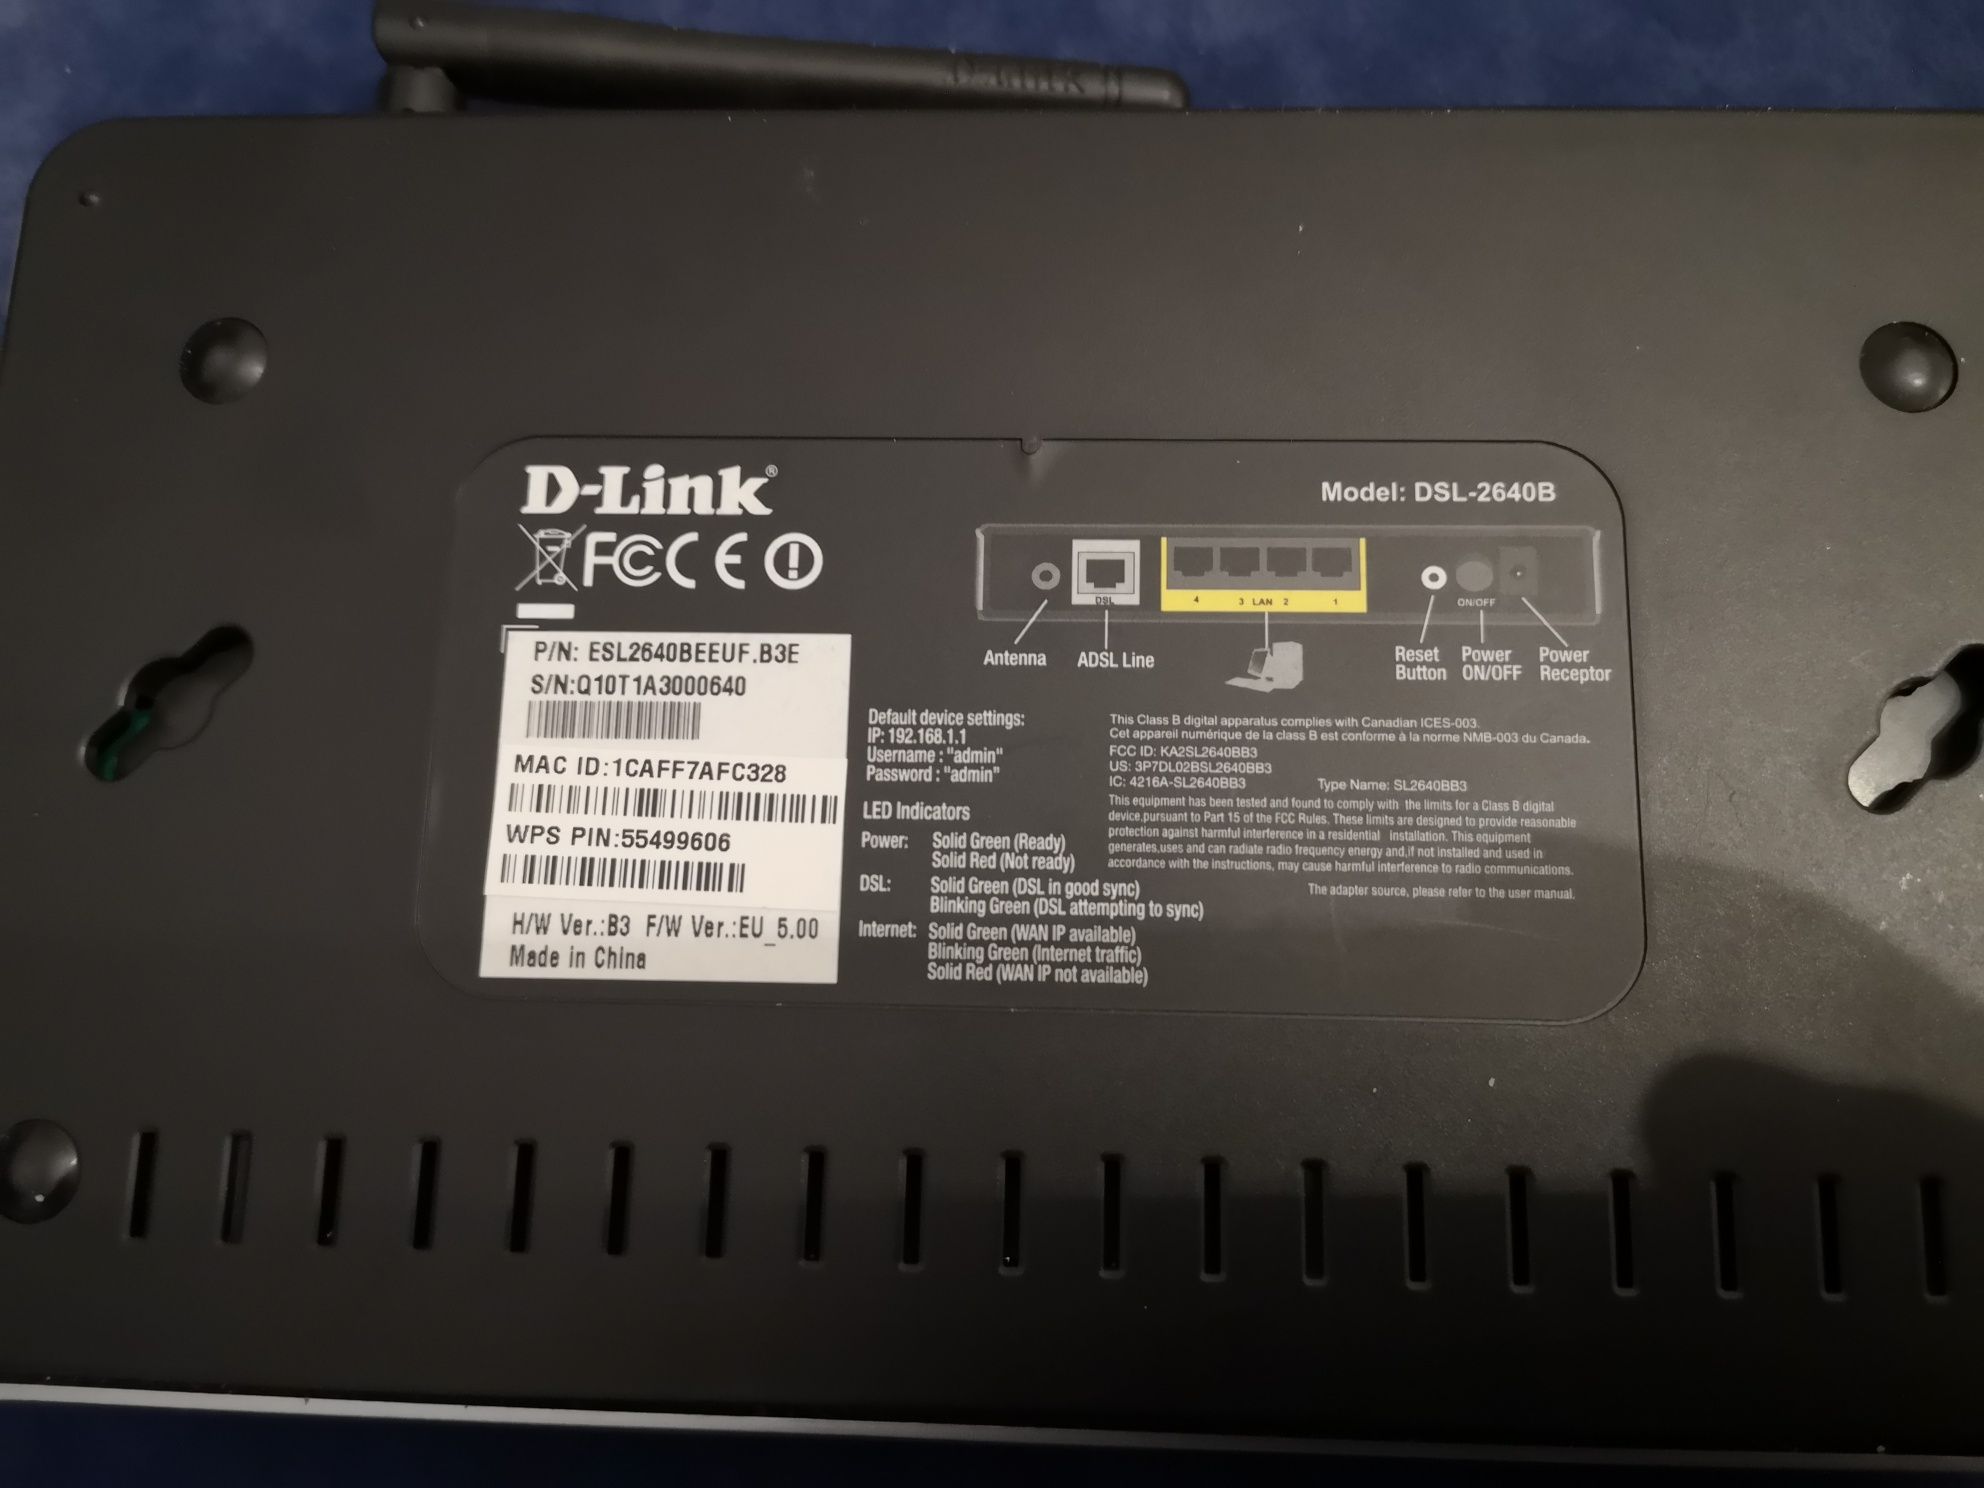 D-link DSL-2640B modem router